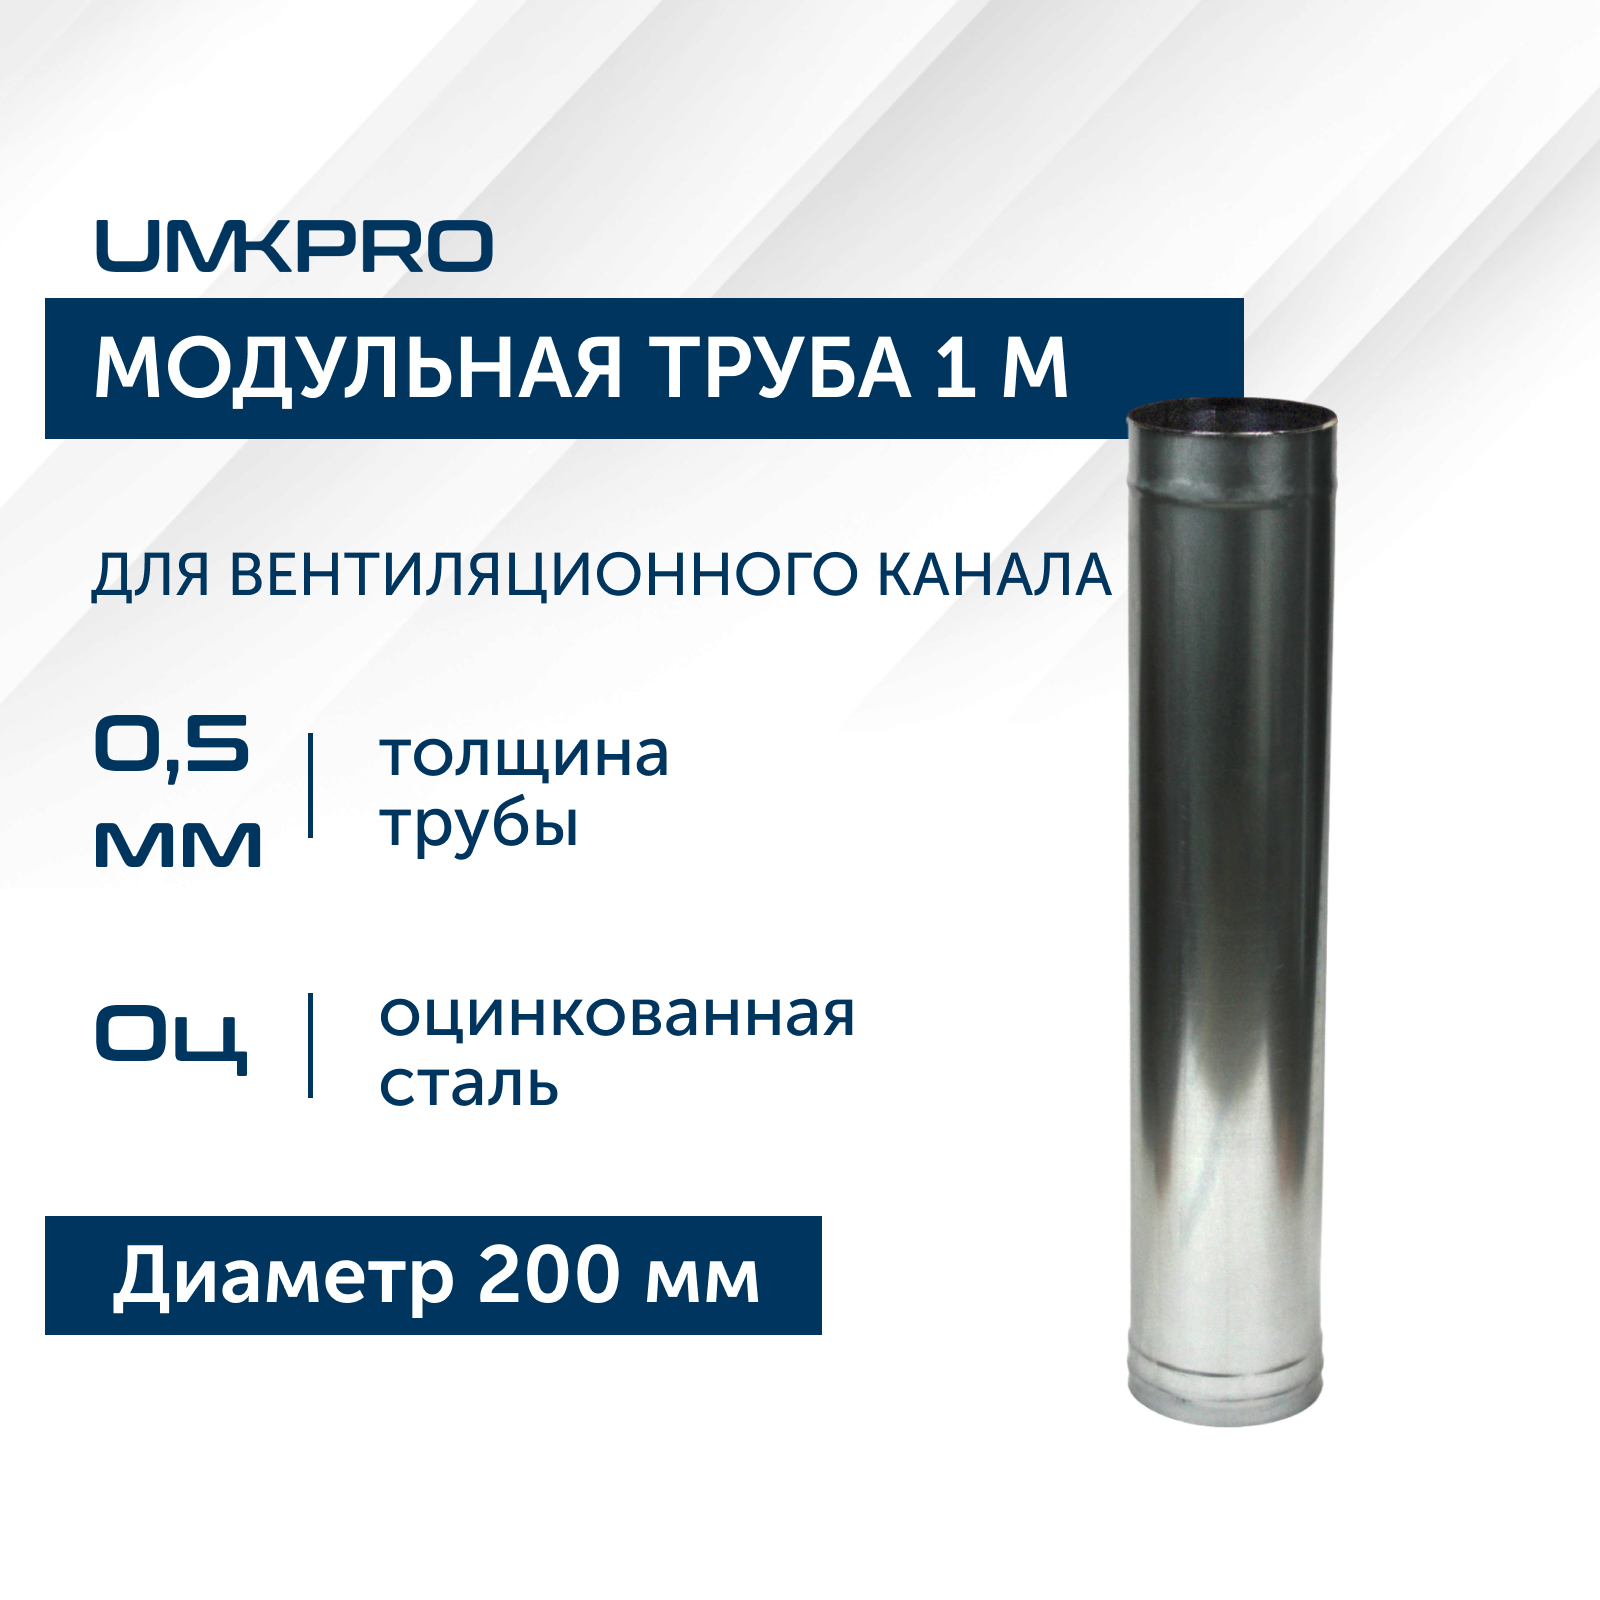 Труба модульная для дымохода 1 м UMKPRO, D 200, Оц/0,5мм кухня модульная сомелье массив